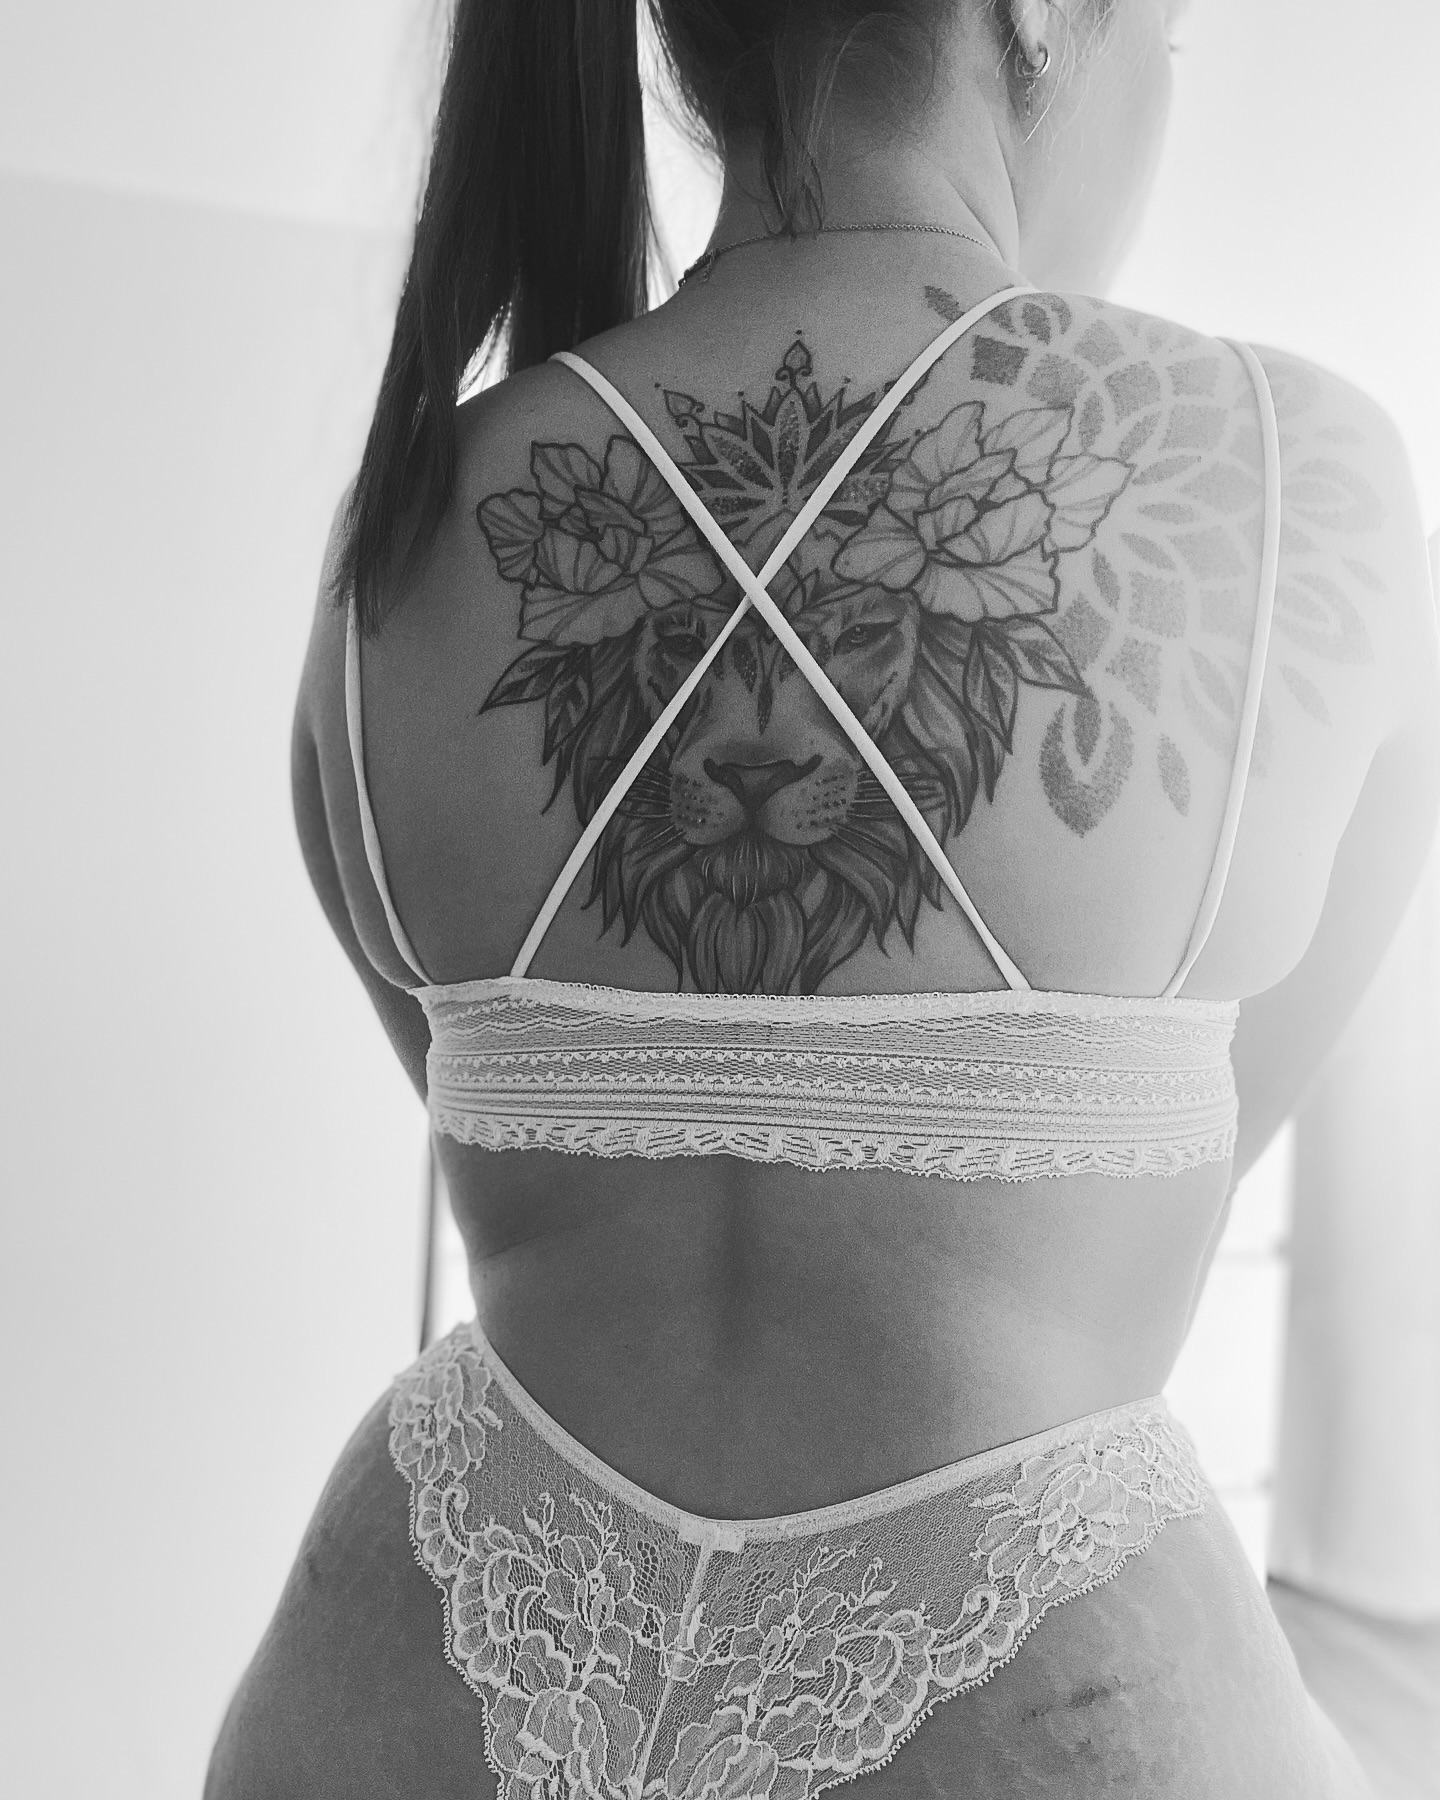 Ein Traum in Weiß 😇 

#tattoomodel #tattoo #tattoos #tattooed #inked #ink #tattoosart #tattoostyle #tattoolife #tattoogirl #tattoogirls #tattoolove #white #dessous #back #sexy #sinnlich #sexpositive #itsme #followme #viral